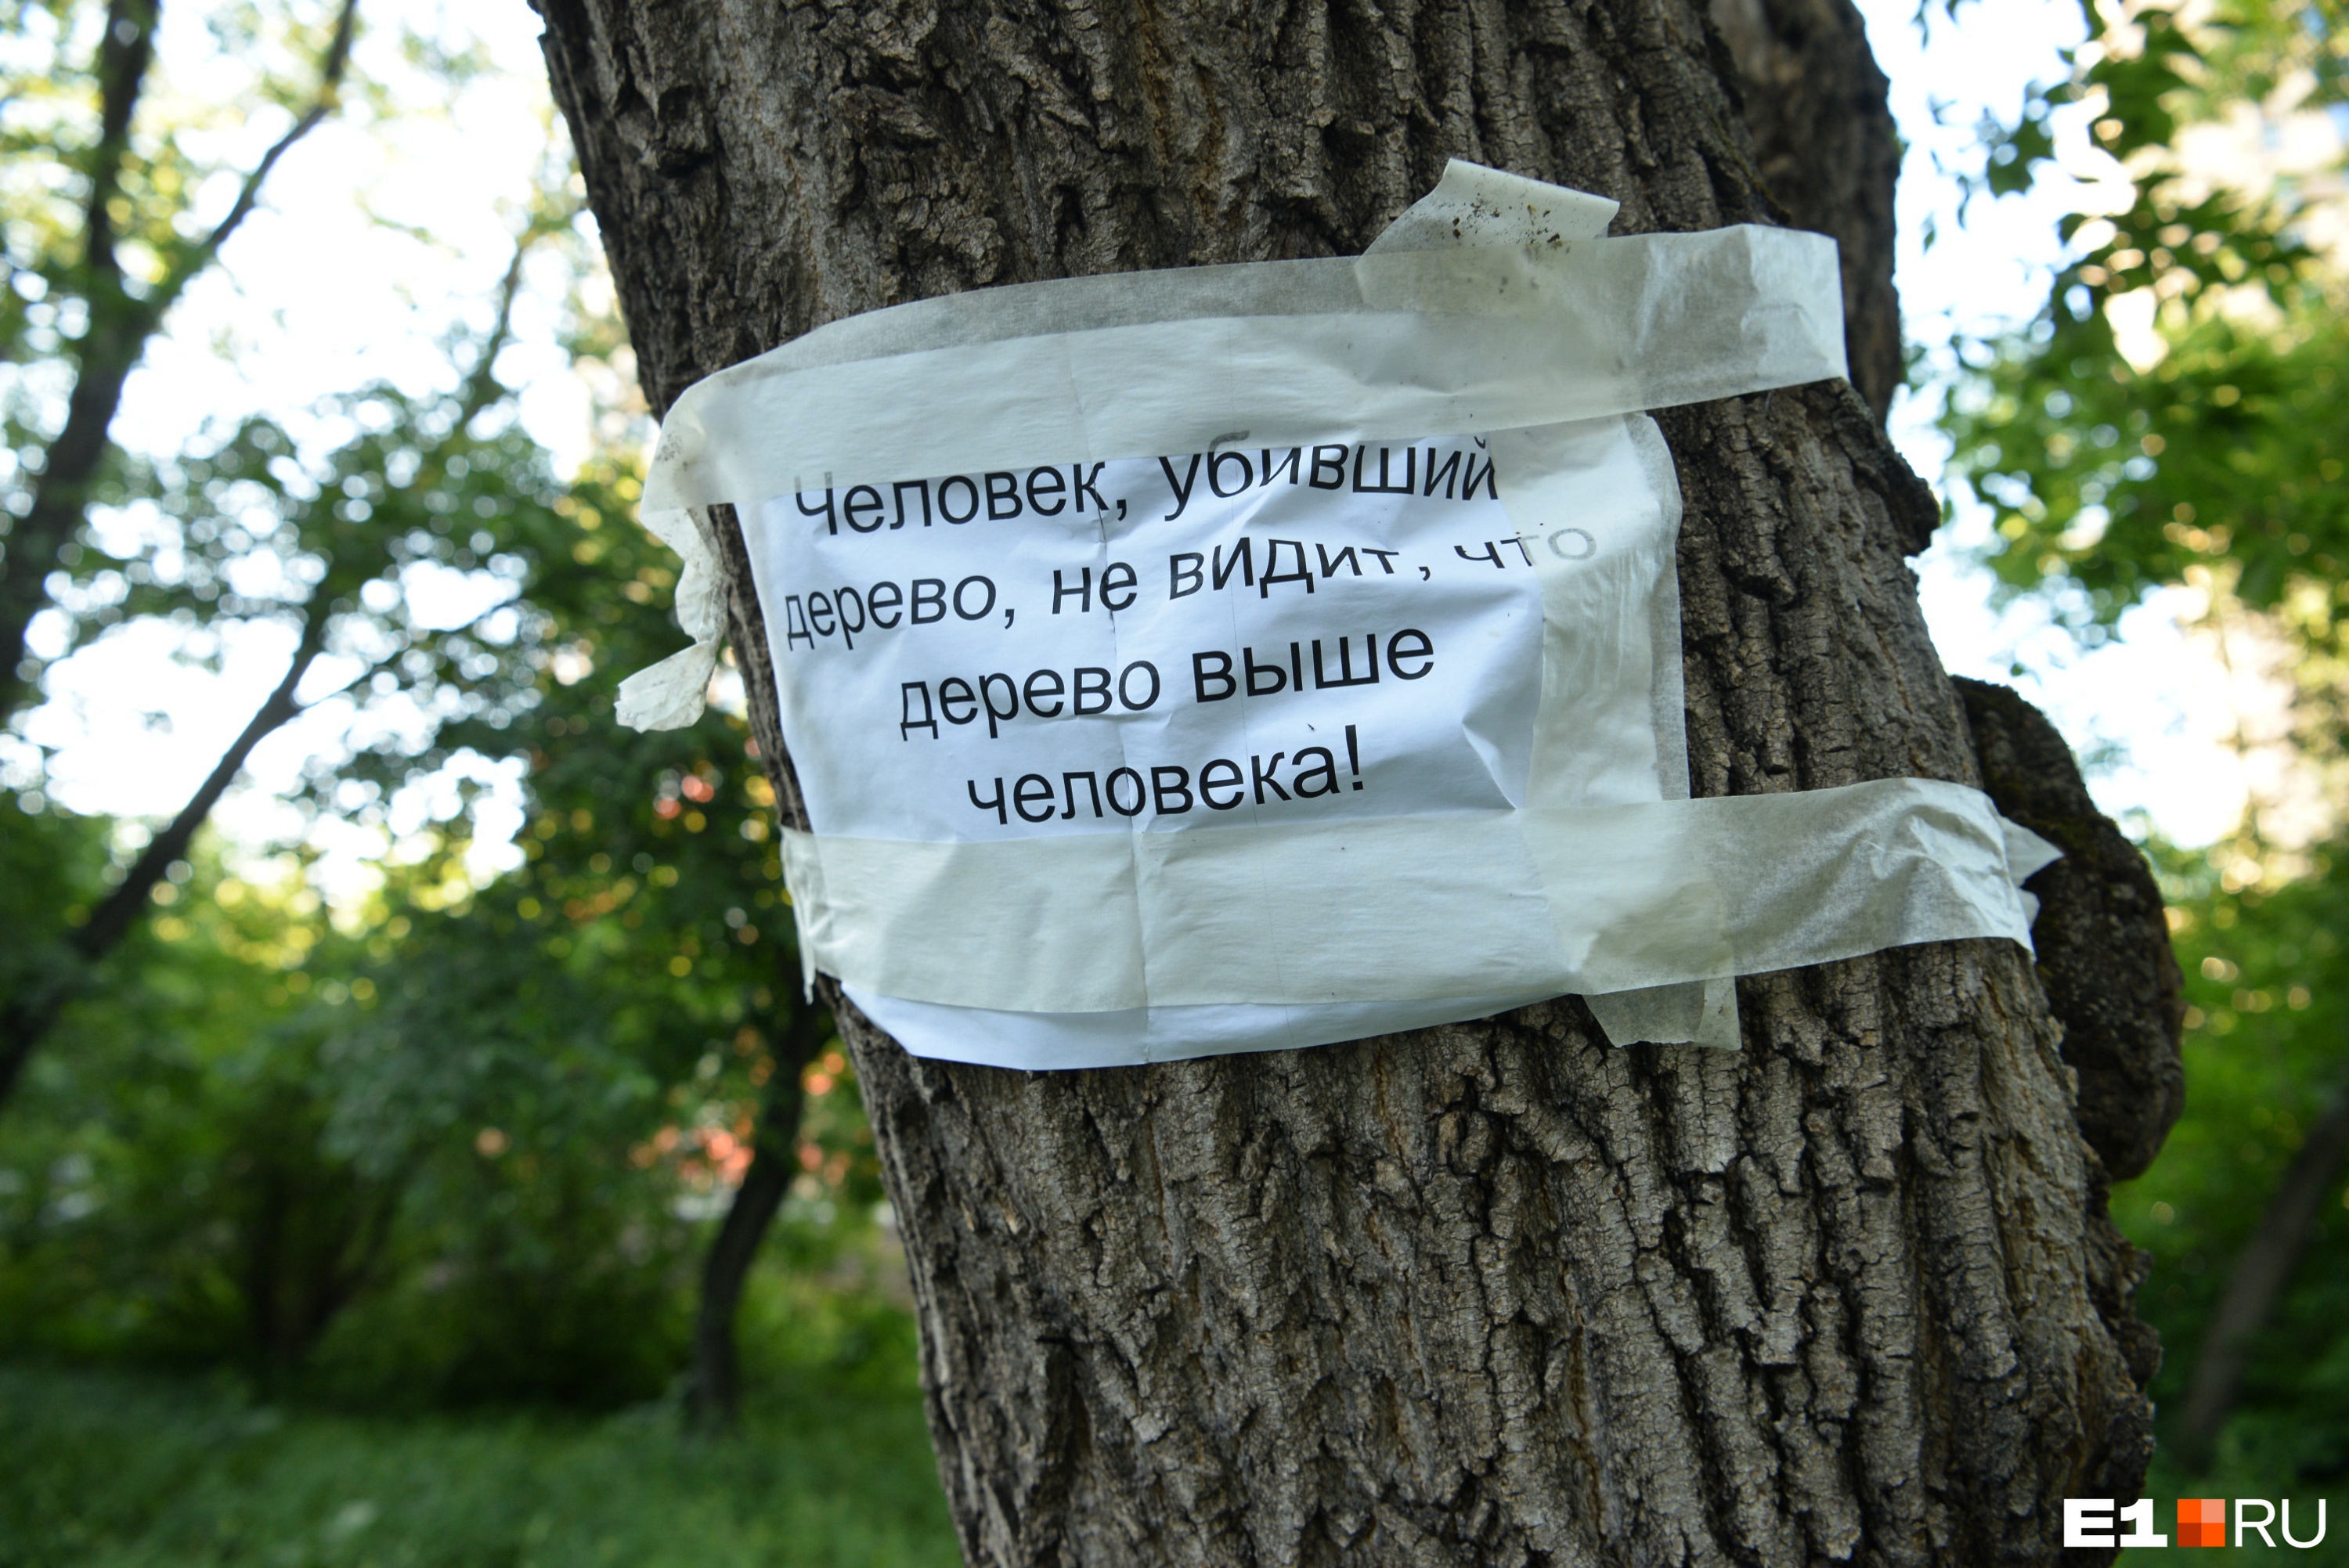 На деревьях стали появляться объявления с философскими рассуждениями